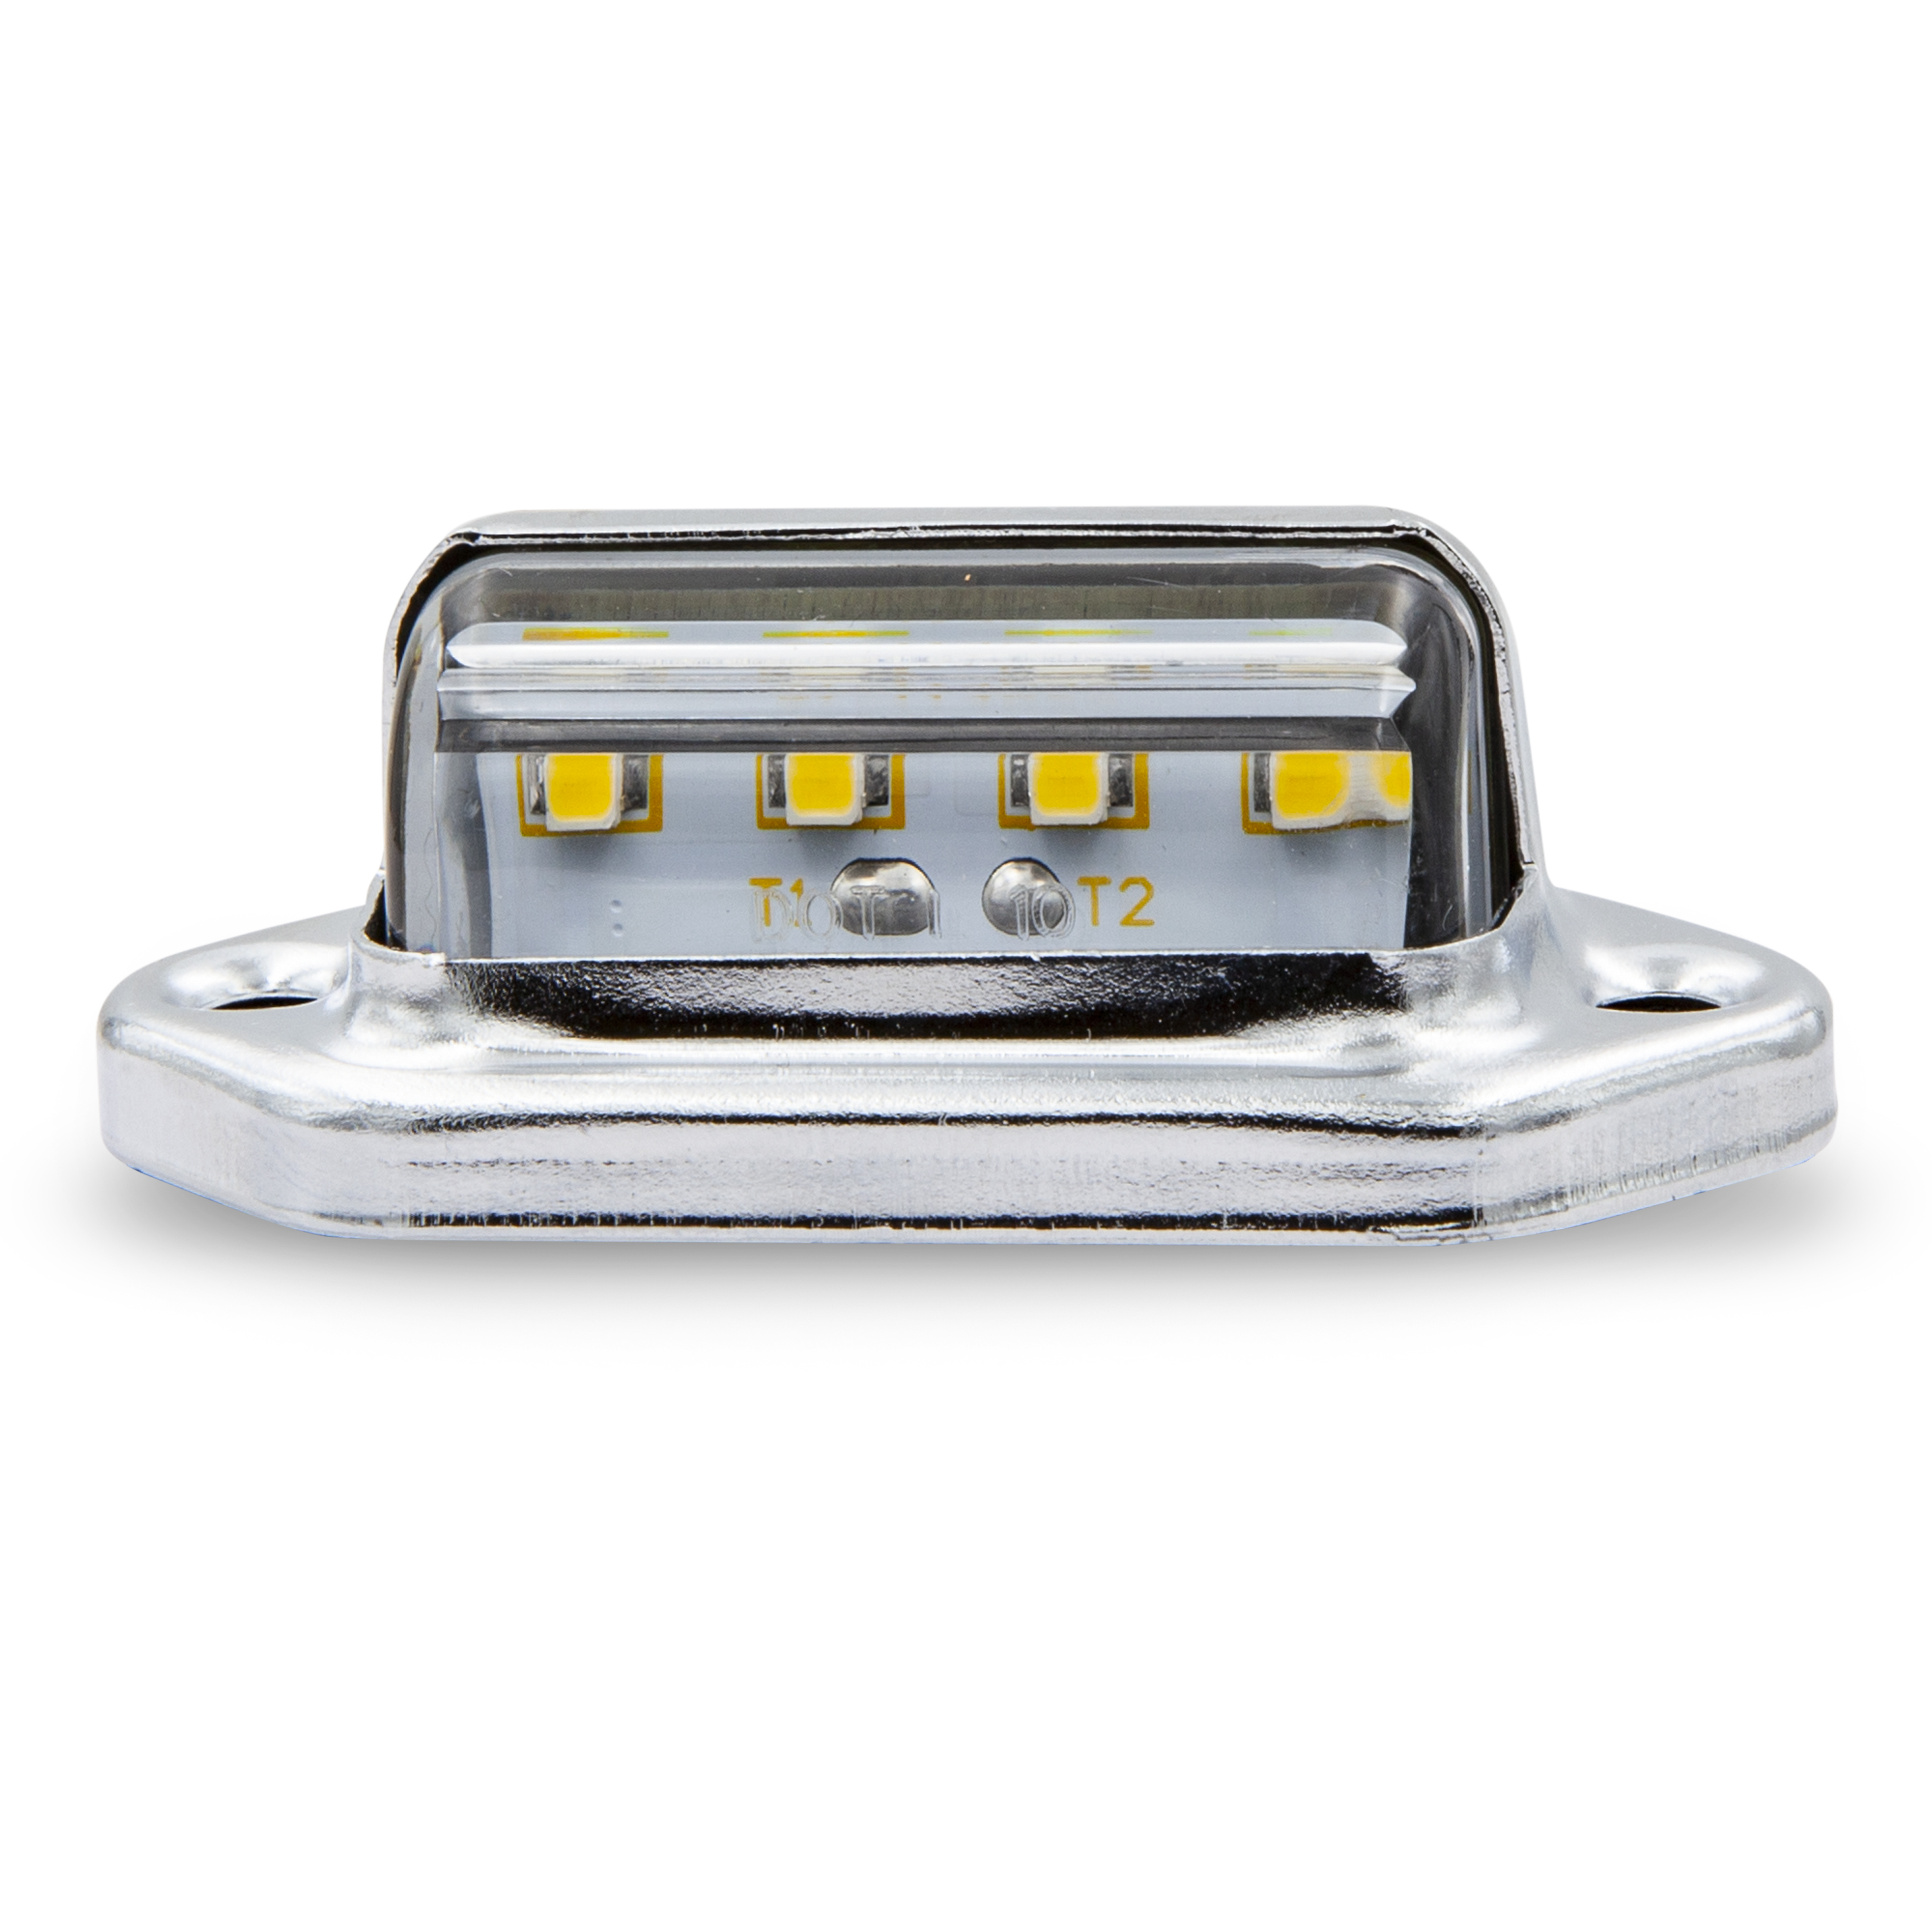 LED License Light 1.7" X 1" With Stainless Steel Chrome Bezel - Bulk Pack